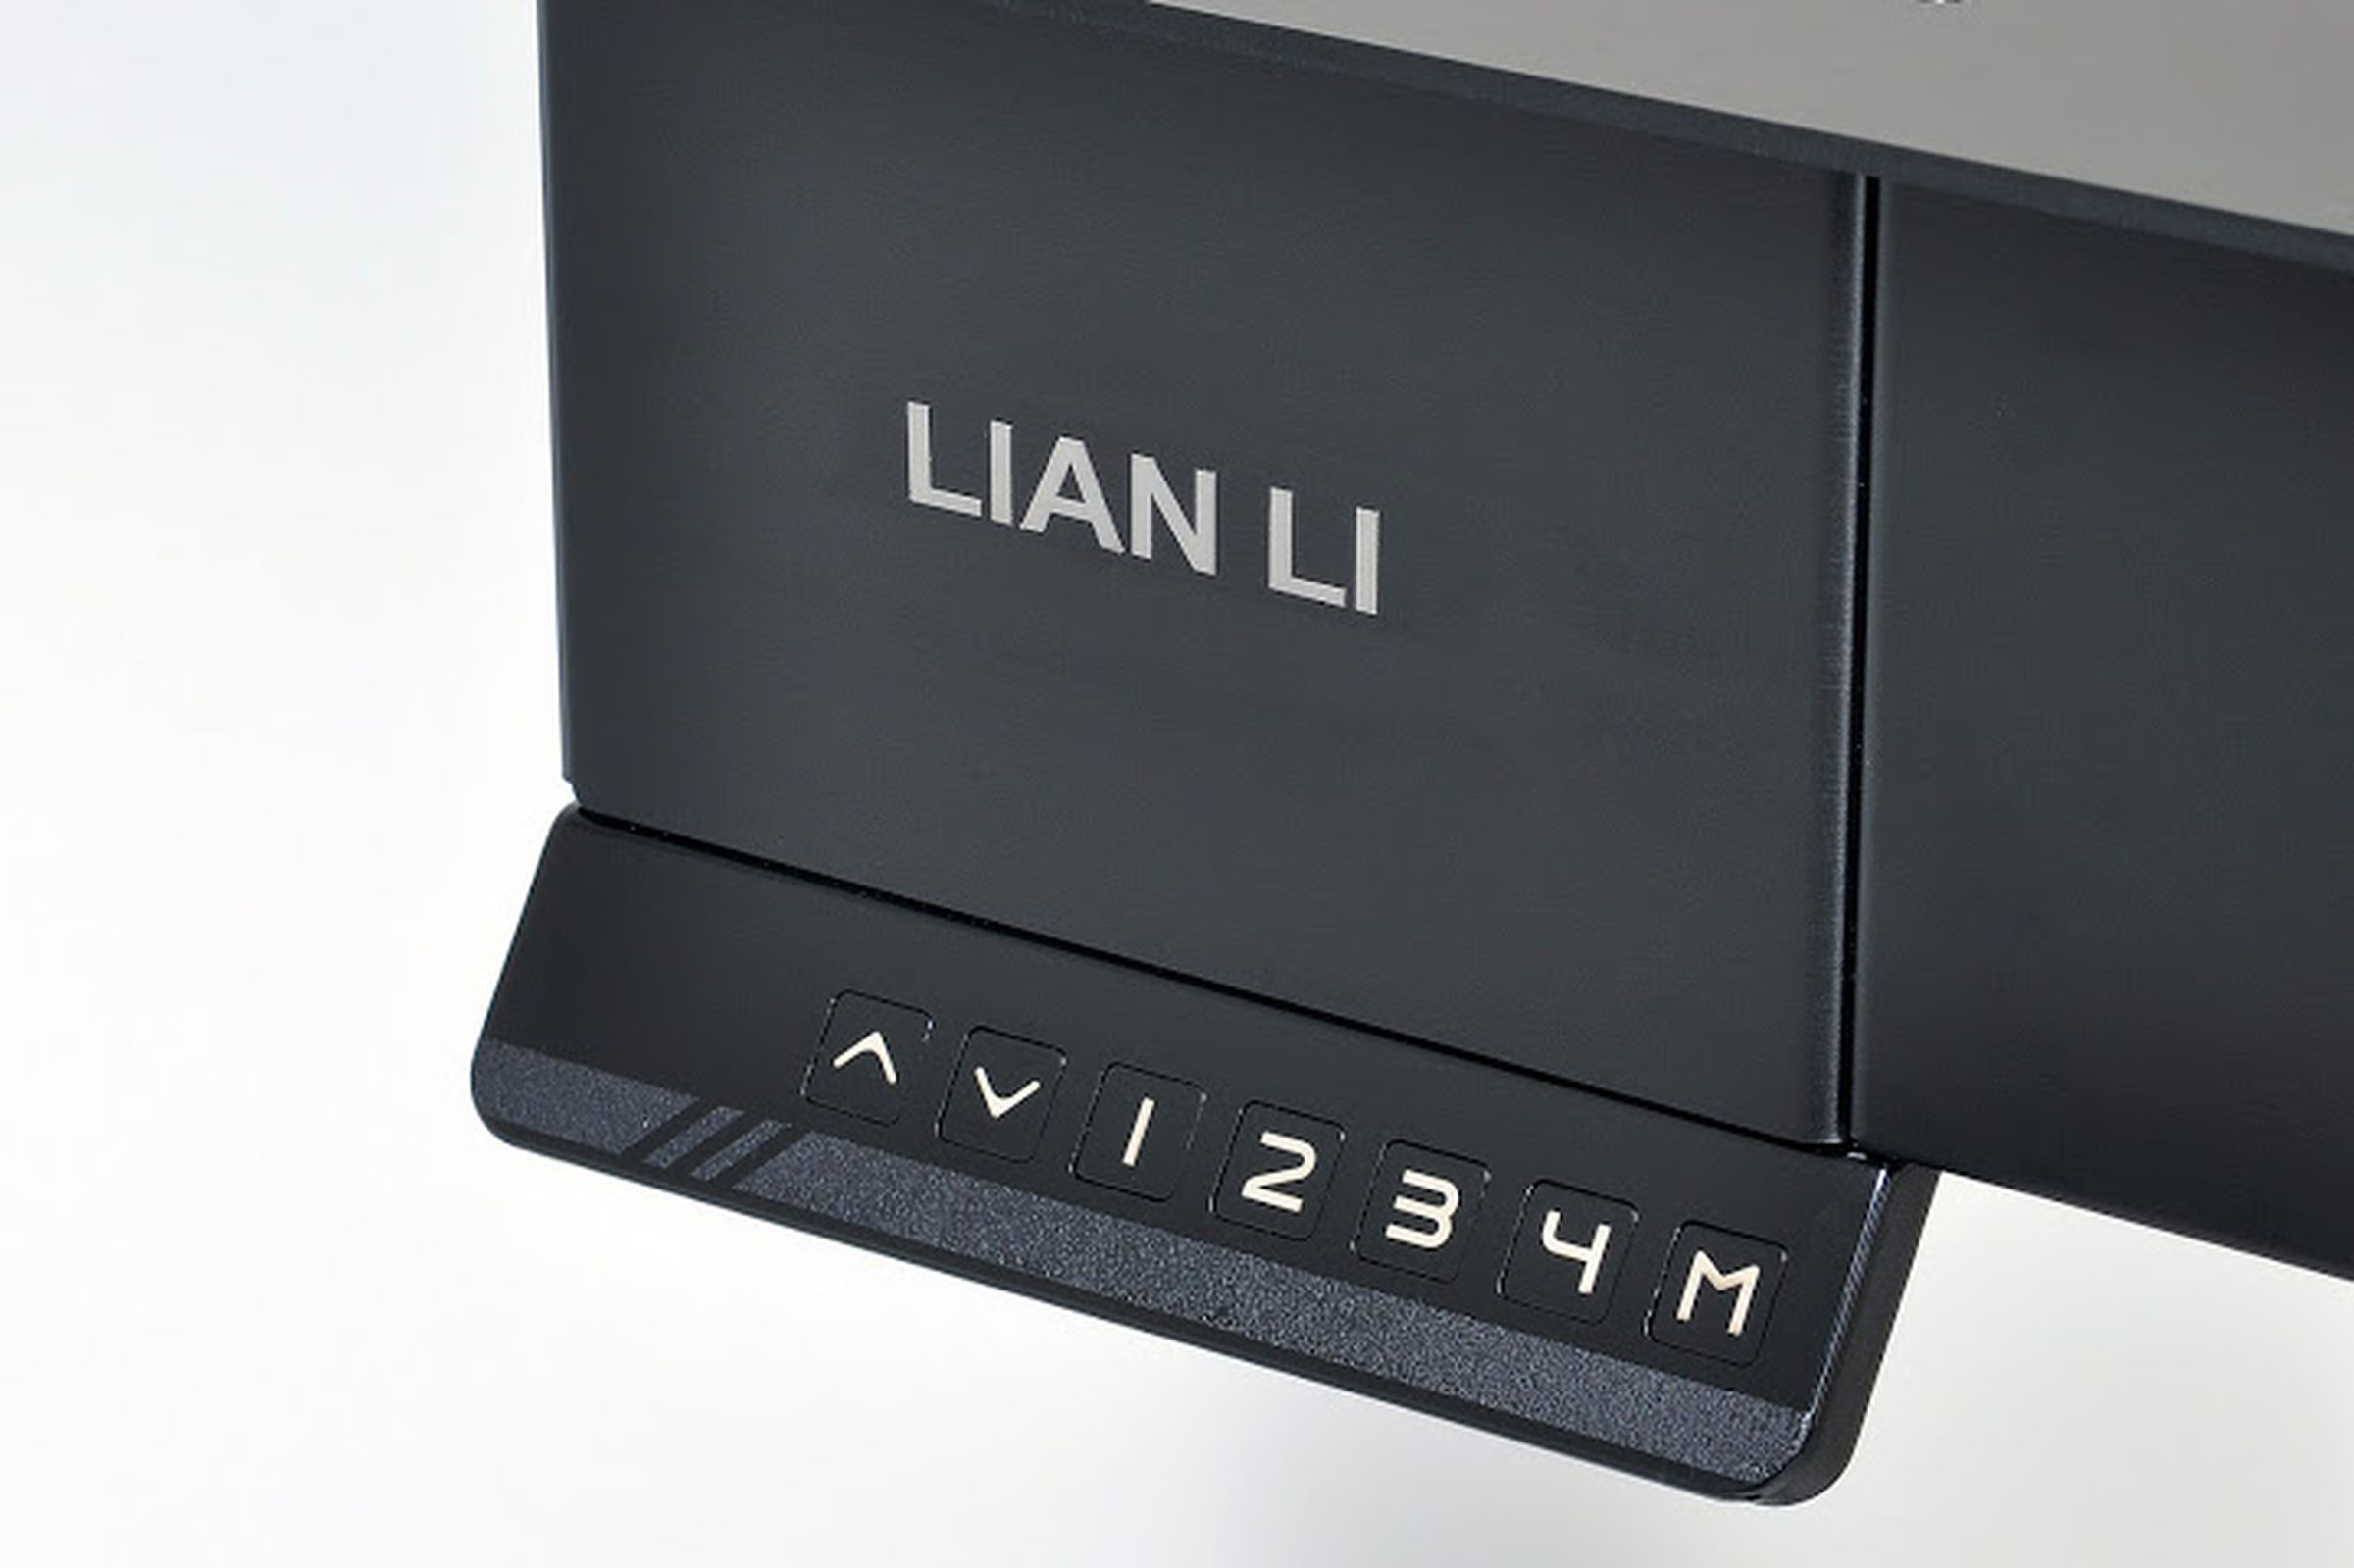 Lian Li DK-04 standing desk